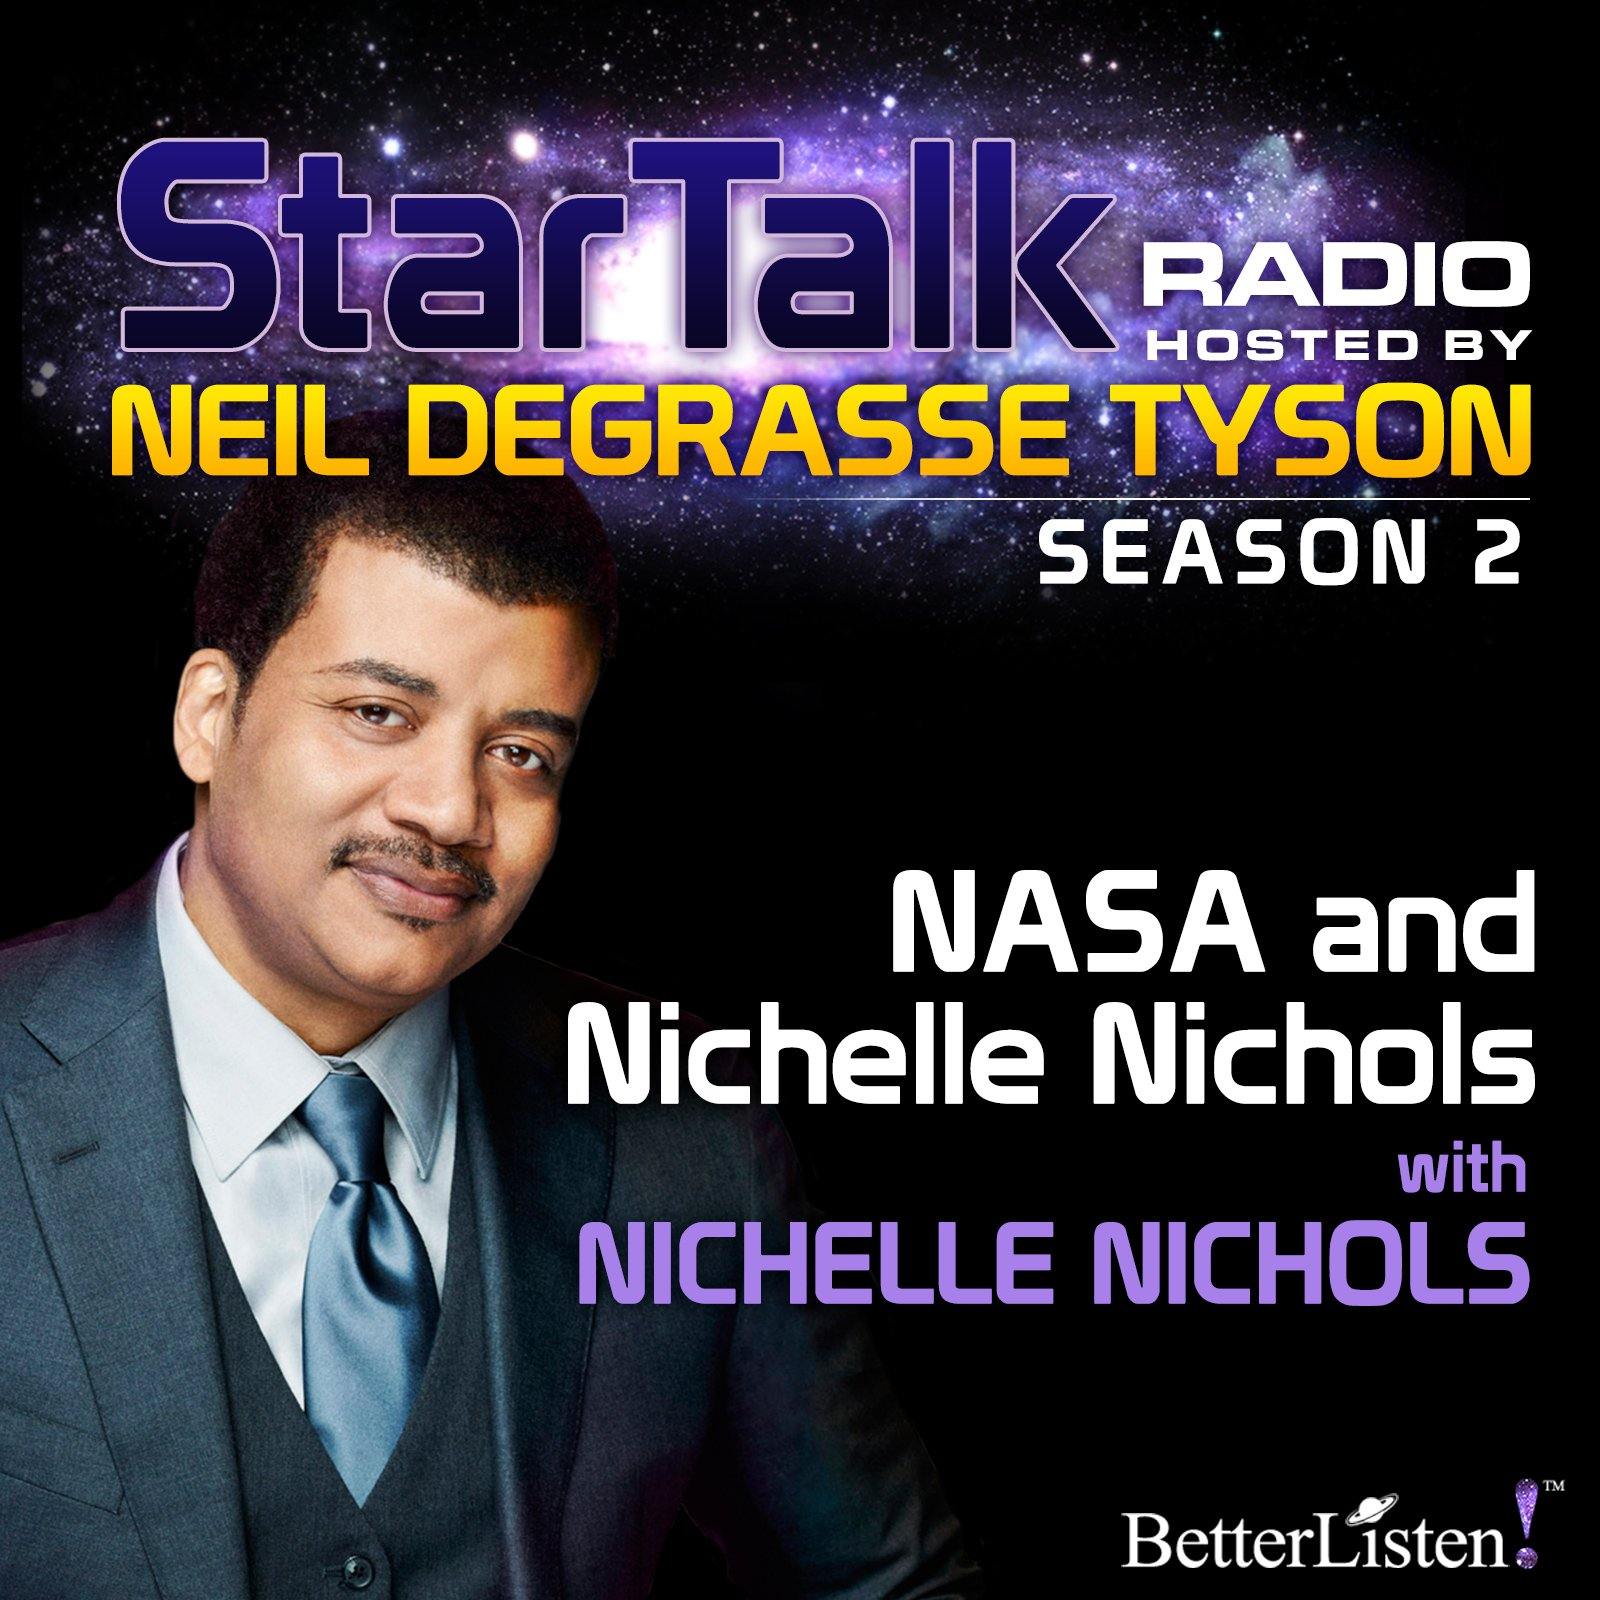 NASA and Nichelle Nichols with Neil deGrasse Tyson Audio Program StarTalk - BetterListen!